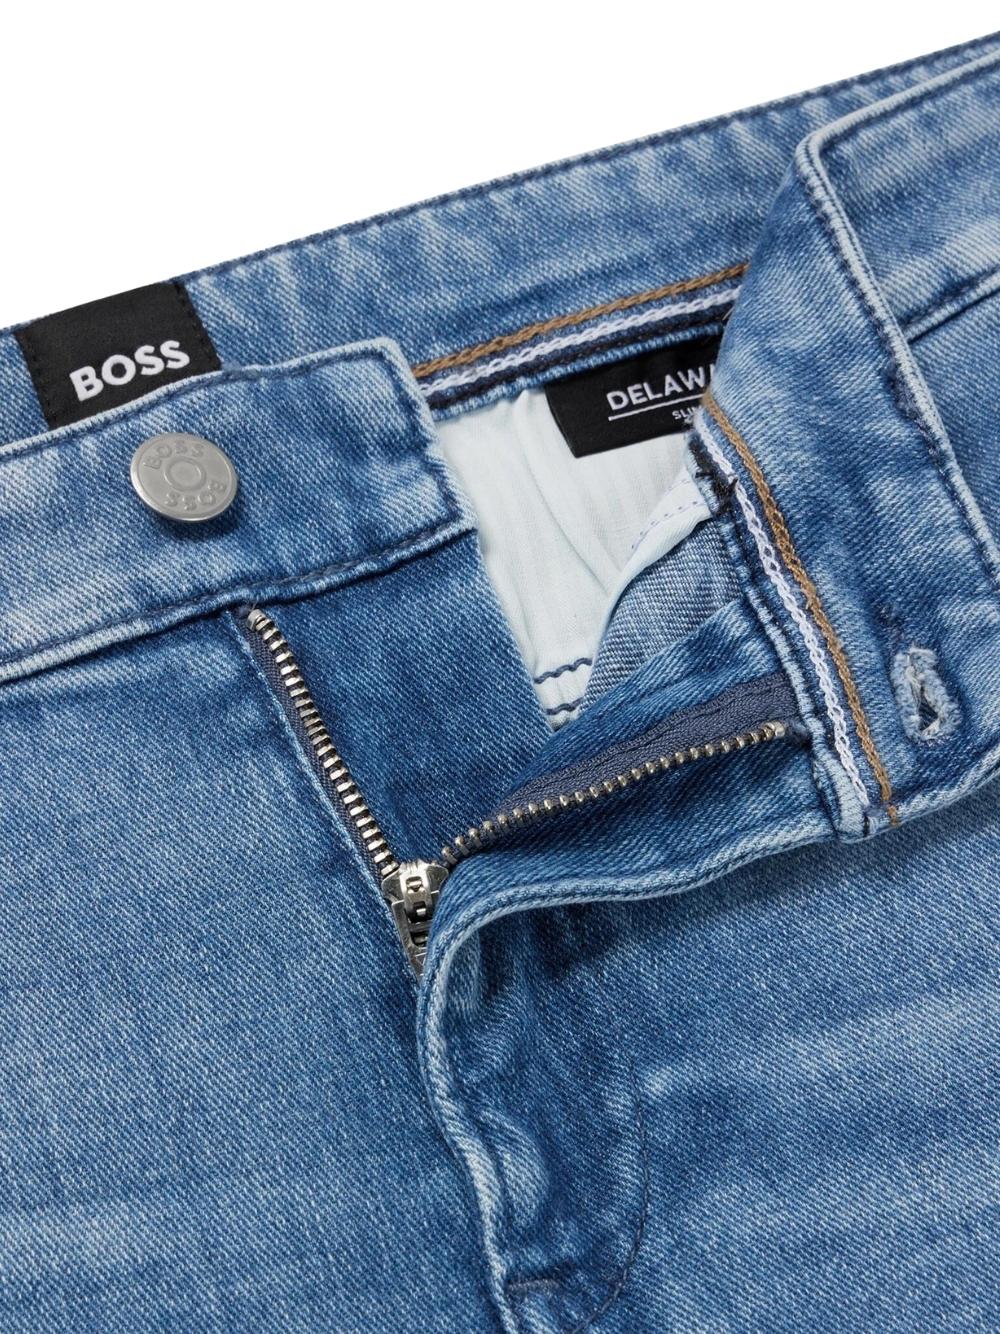 BOSS jeans